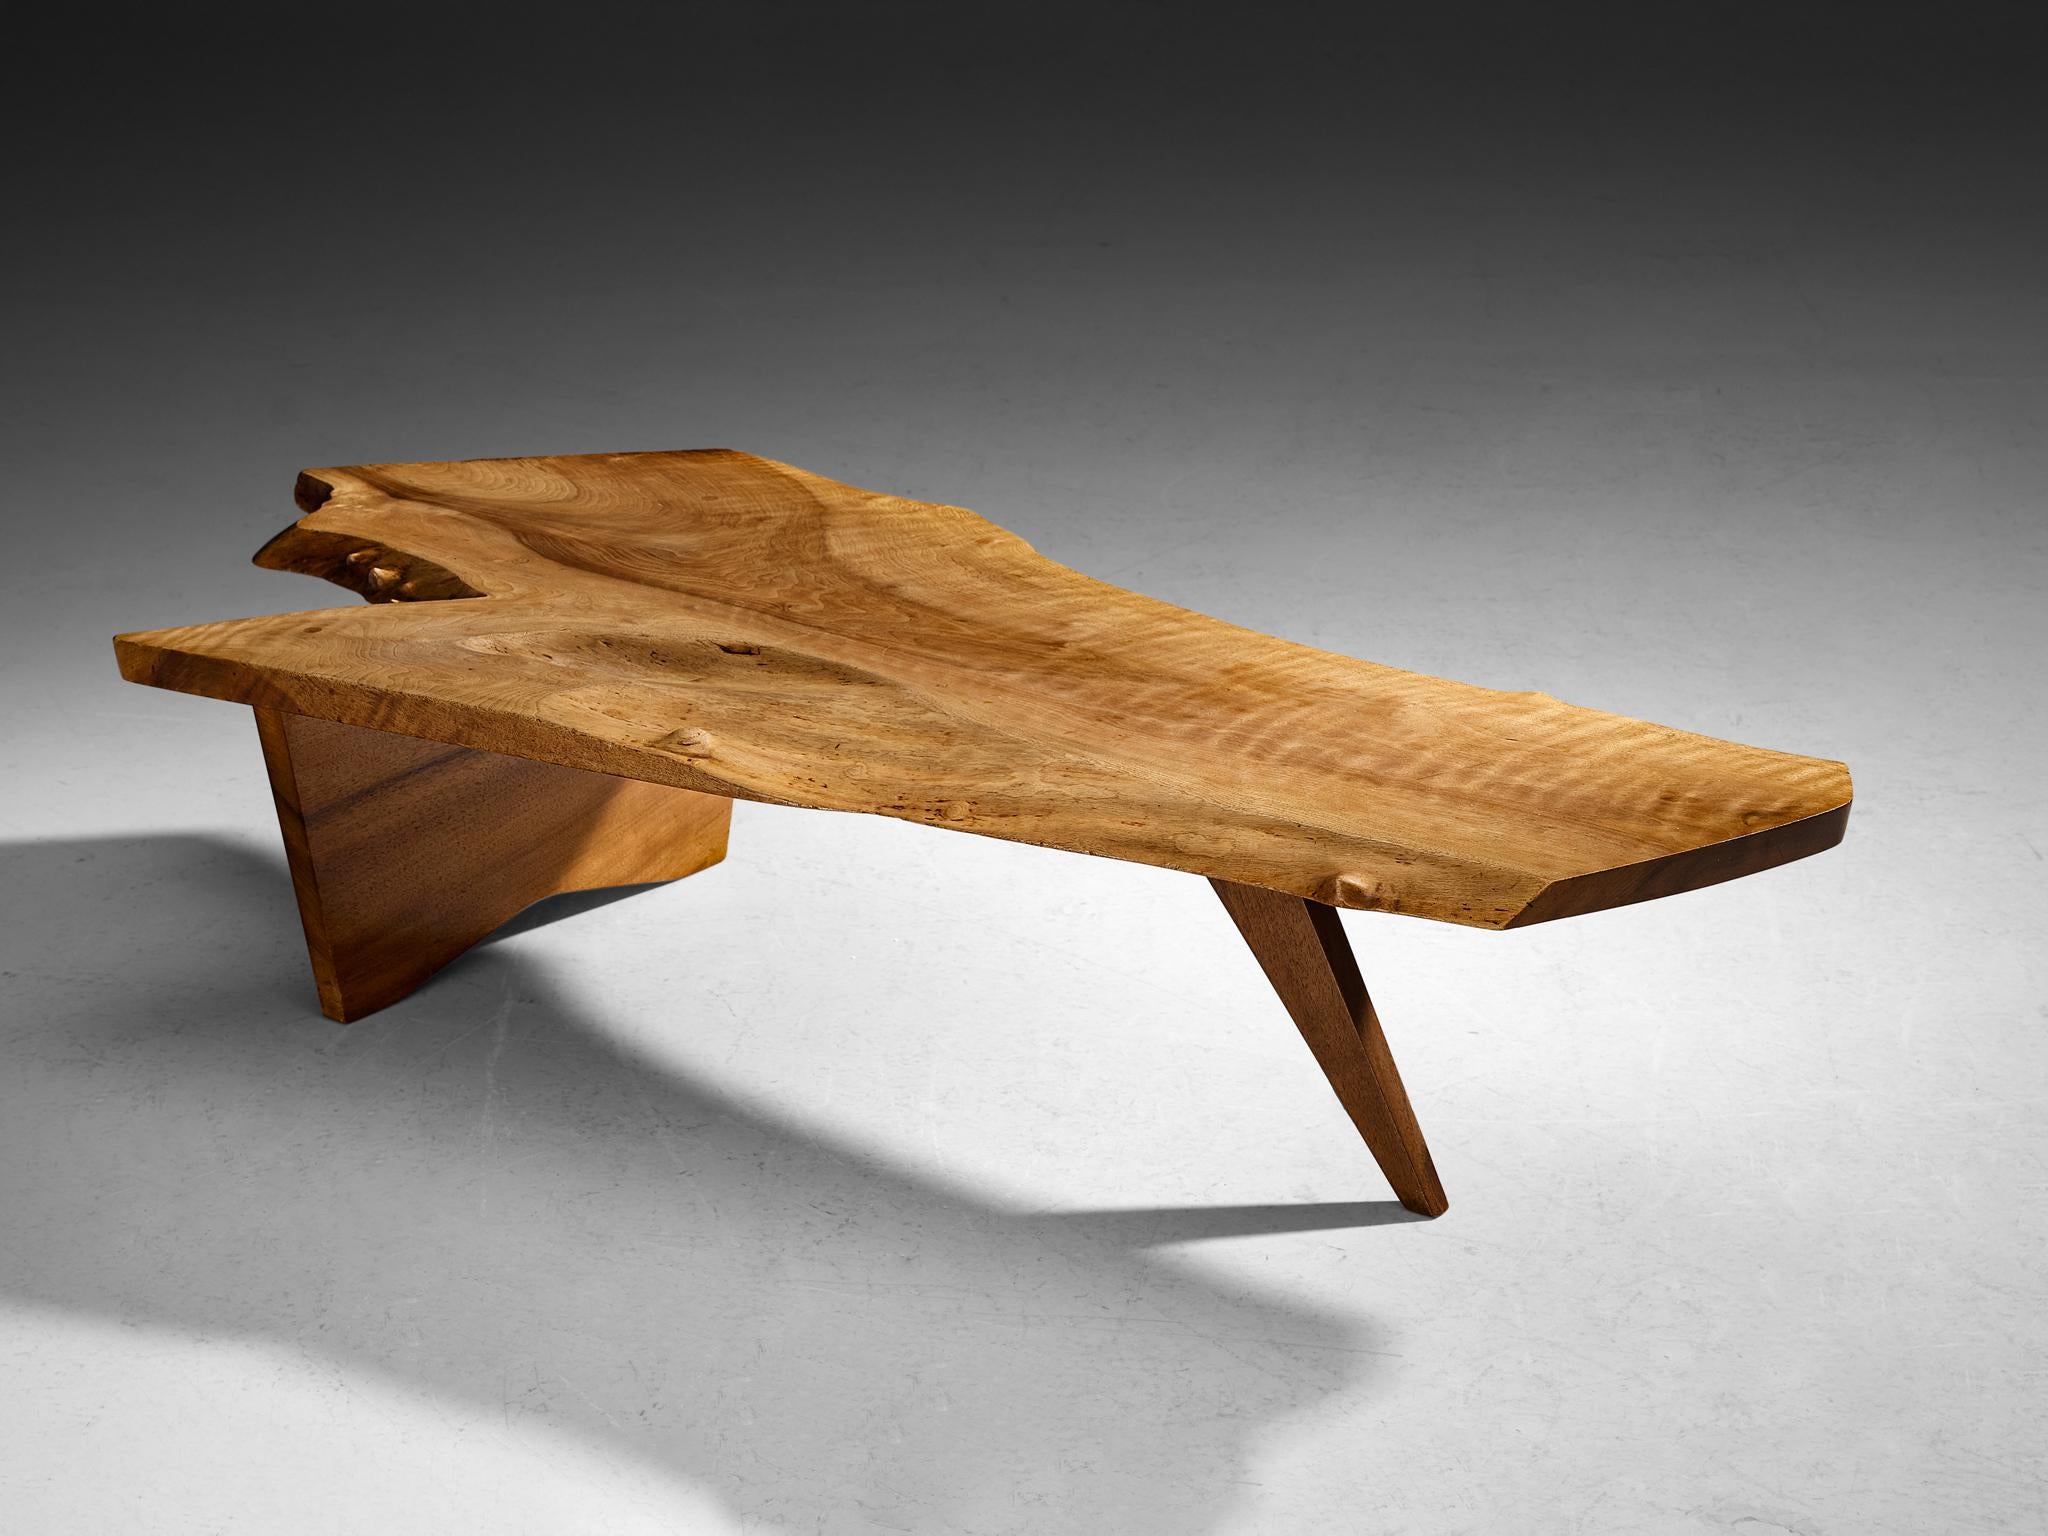 George Nakashima, table basse en dalles à bords libres, noyer anglais, États-Unis, vers 1960 

L'ébéniste et designer américain George Nakashima prouve avec cette table quintessentielle qu'il est un véritable maître de son art. L'impressionnante